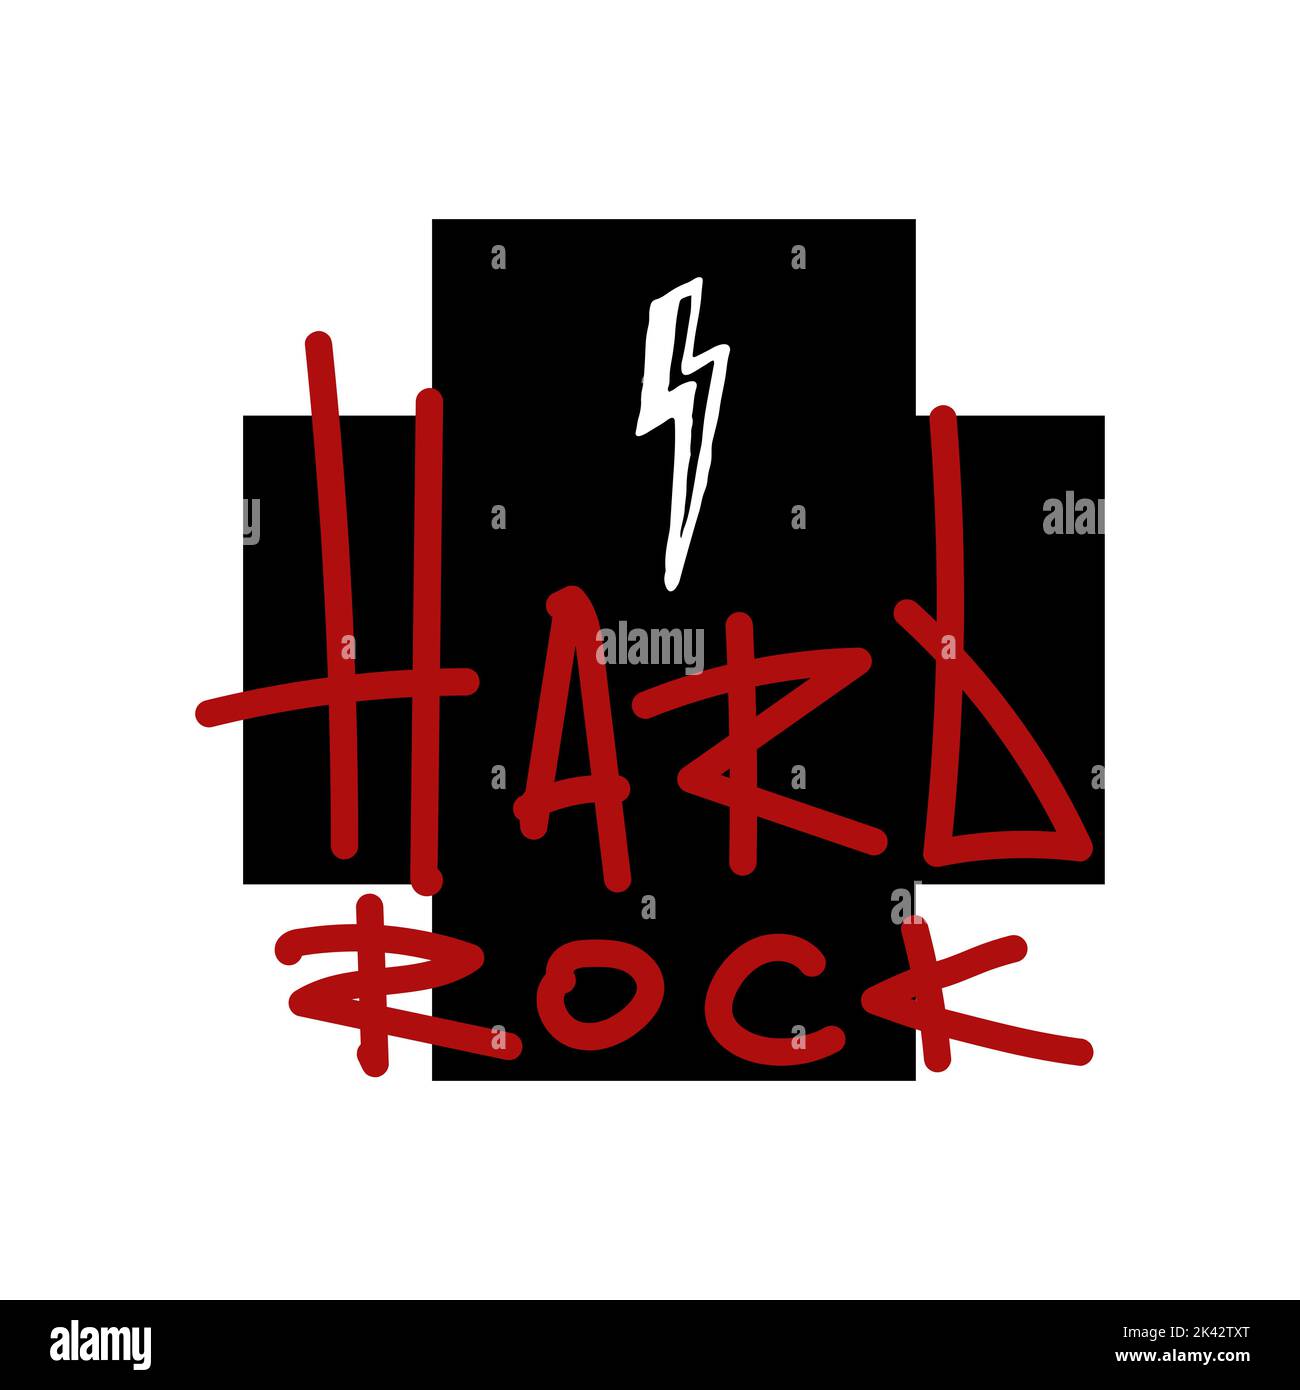 Isolierter roter Hard Rock Graffiti-Tag auf einem schwarzen Kreuz mit weißem Blitz. Vektorgrafik. Stock Vektor